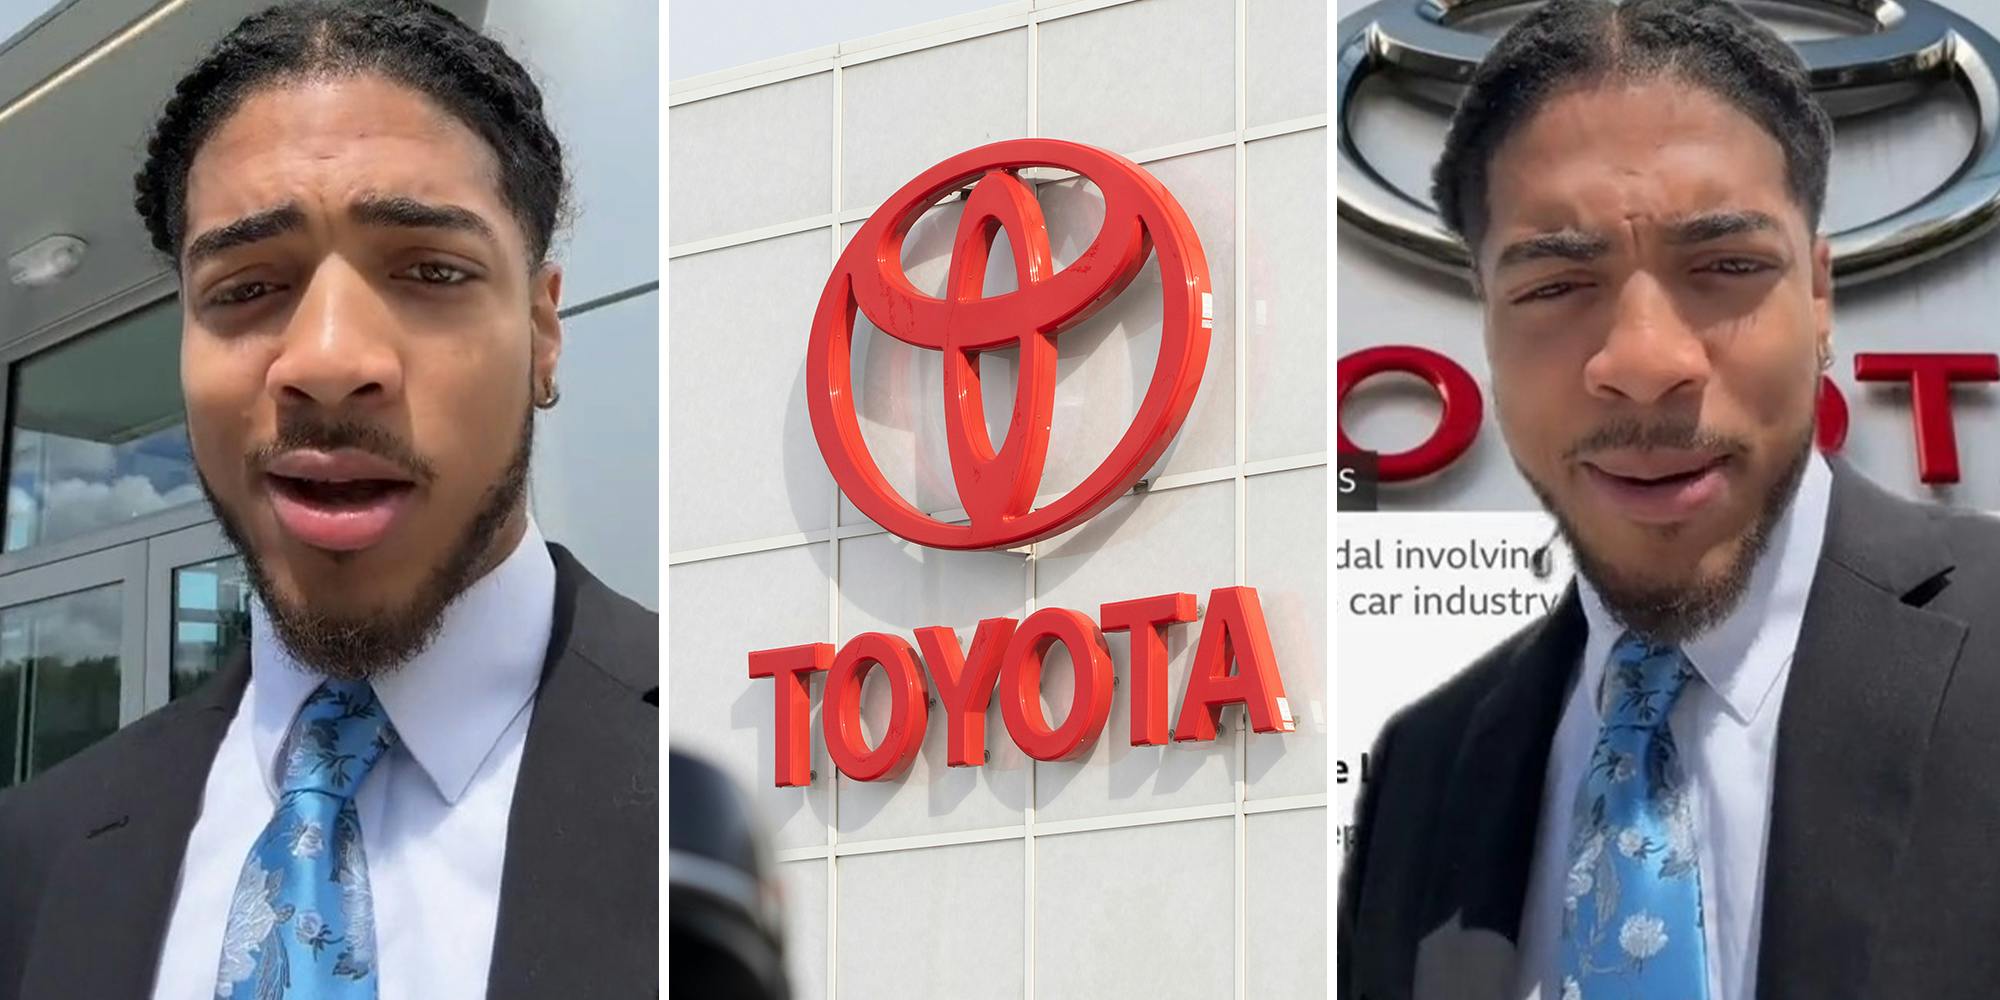 Perché sono stati perquisiti gli uffici della Toyota e non quelli della Honda o della Mazda?